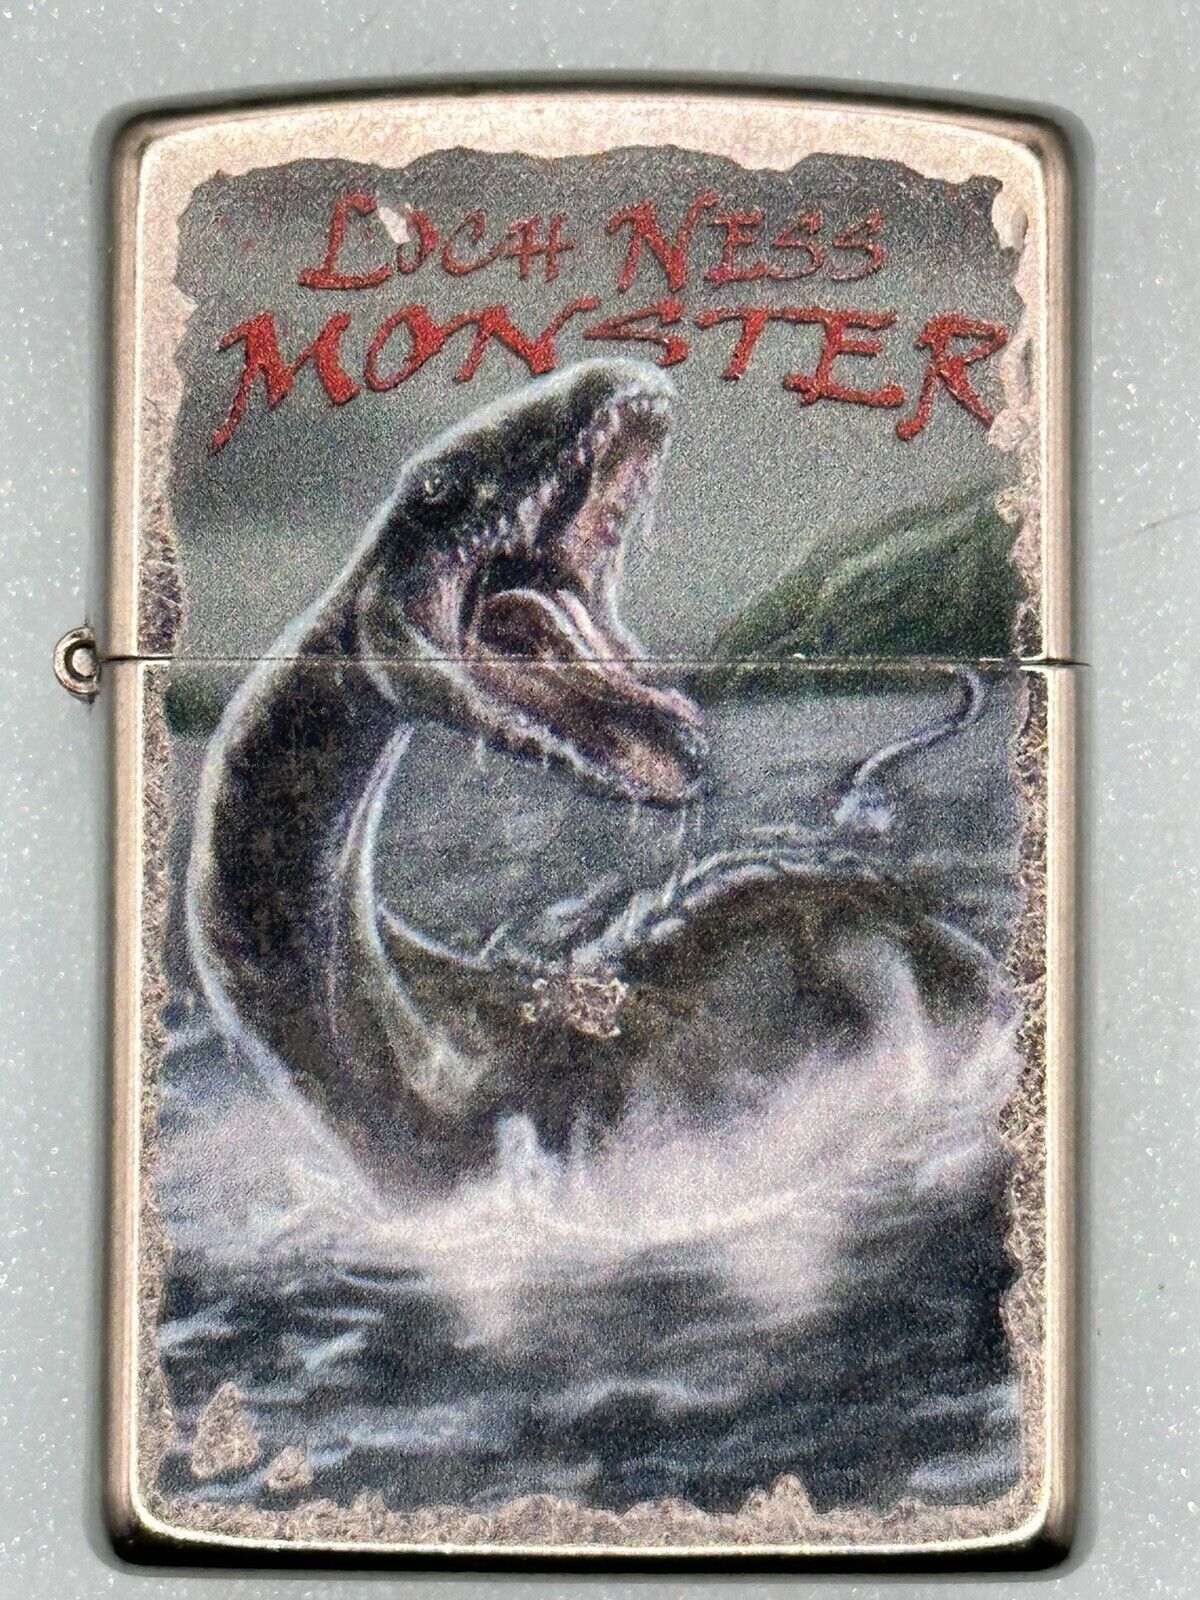 2019 Loch Ness Monster Chrome Zippo Lighter NEW